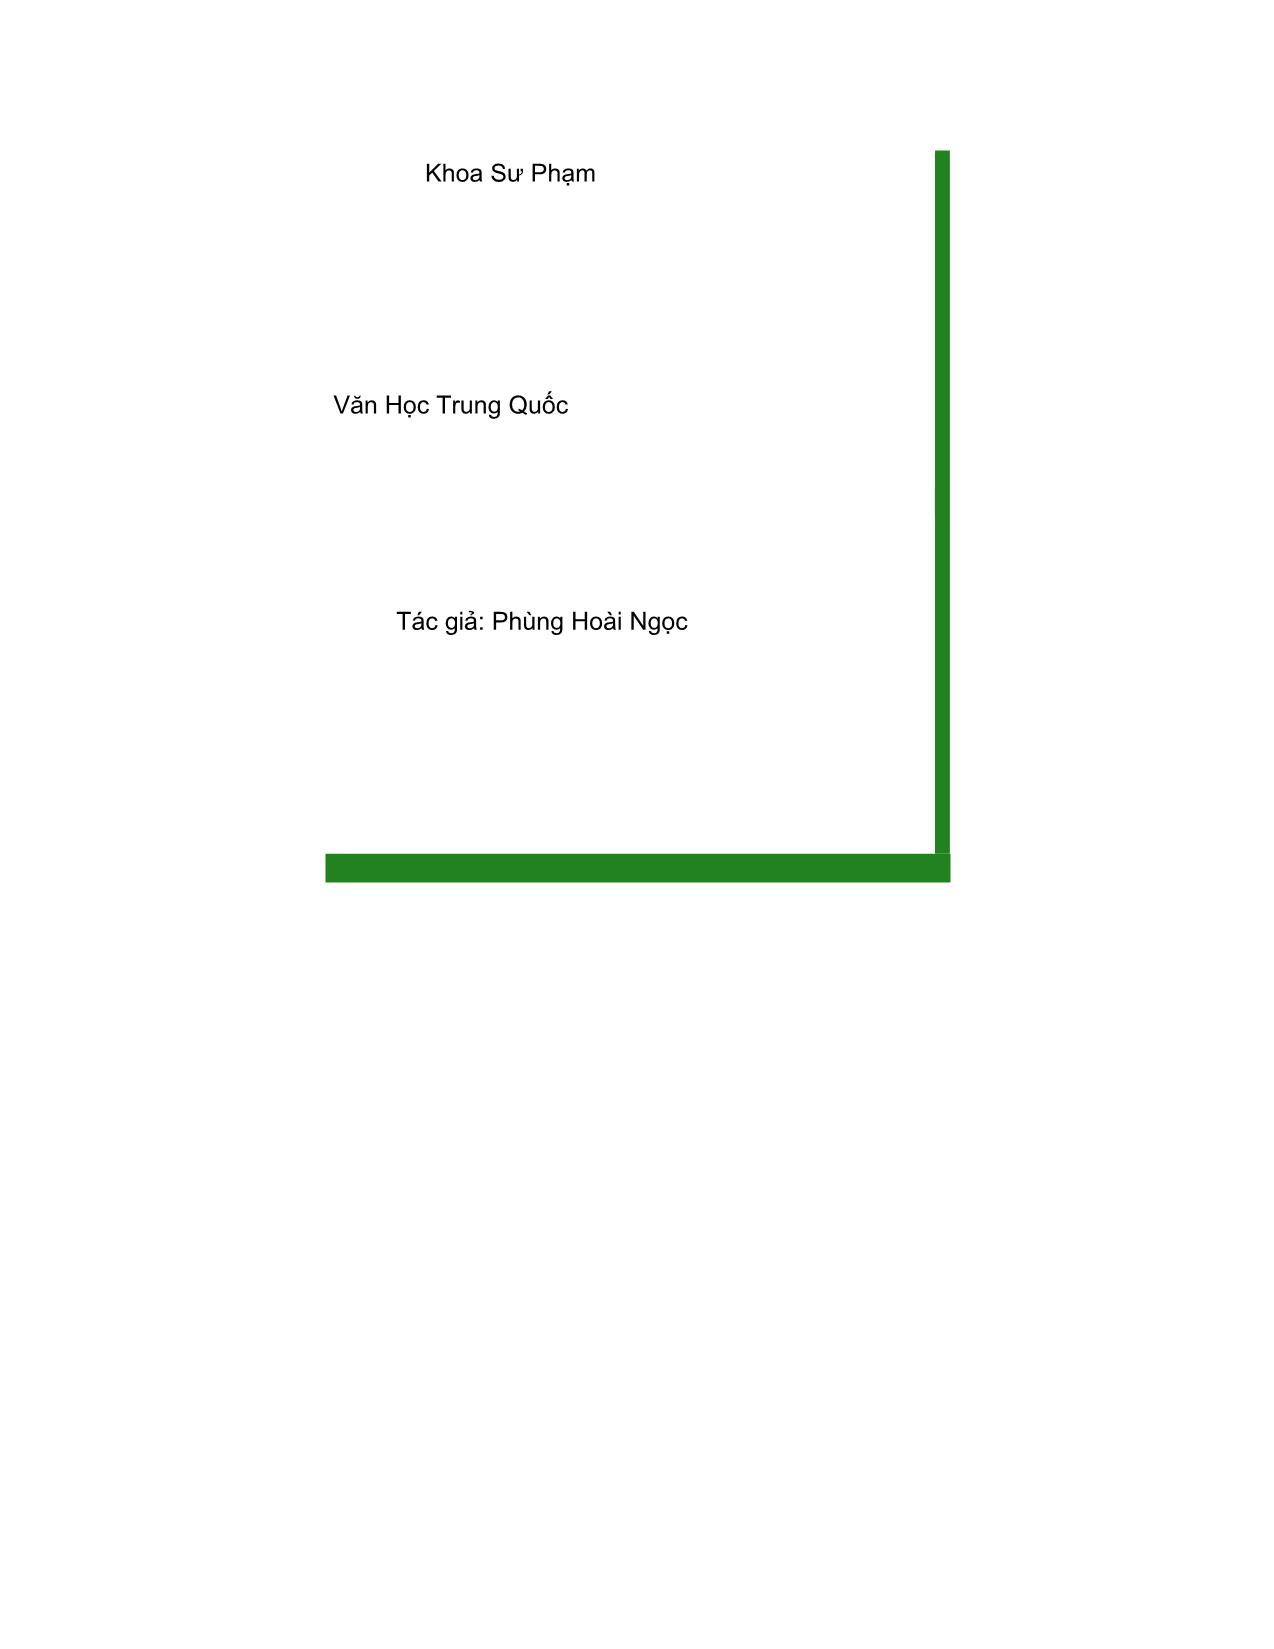 Giáo trình Văn học Trung Quốc (Phần 1) trang 1